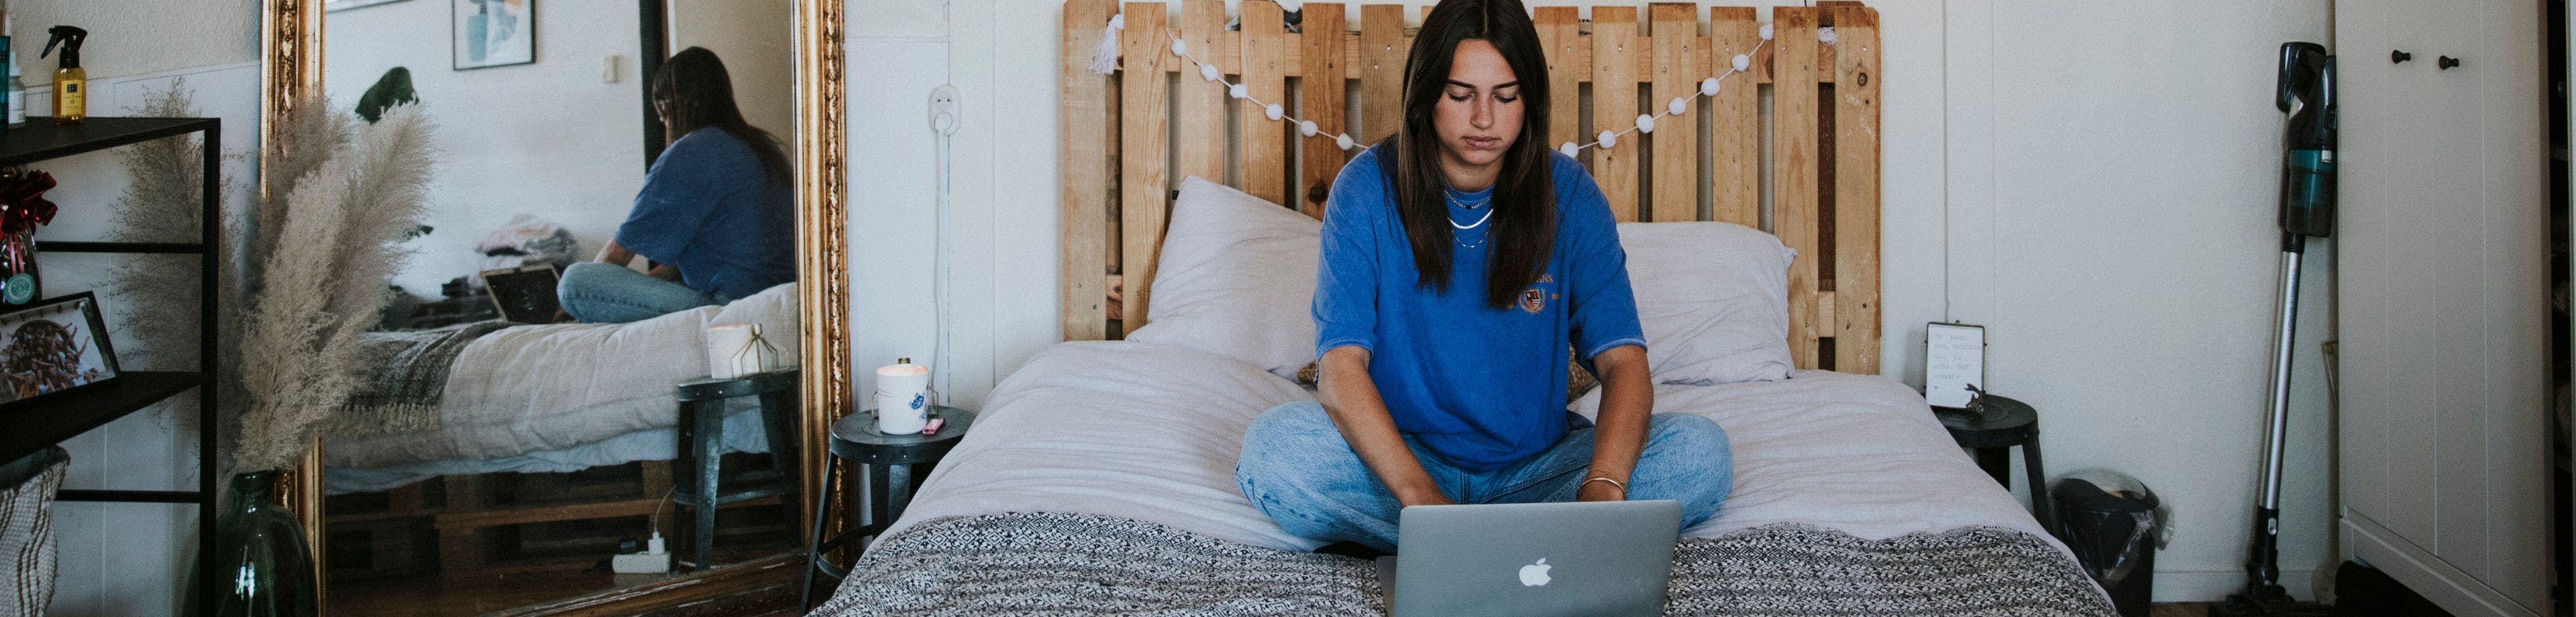 Een jonge vrouw zit op haar bed. Ze is online aan het shoppen op haar laptop.